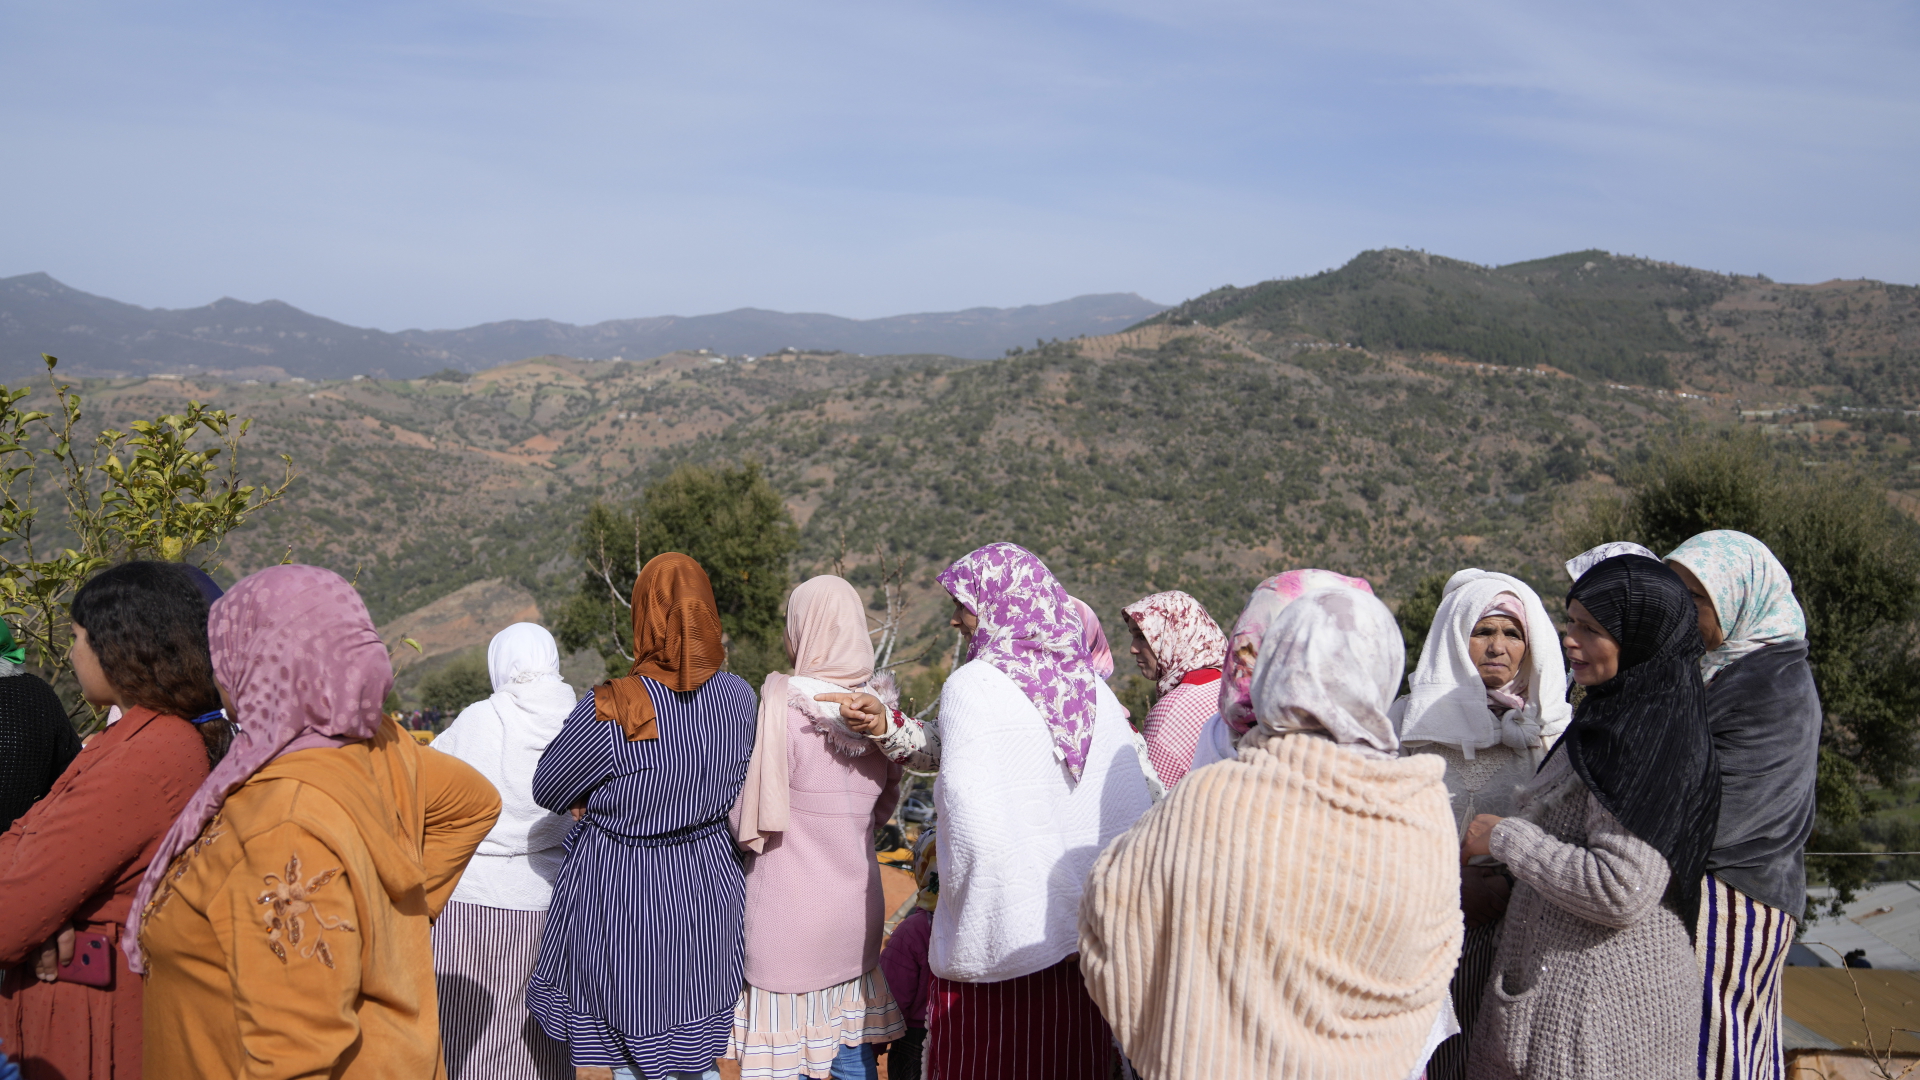 Frauen am Brunnenloch in Marokko | dpa